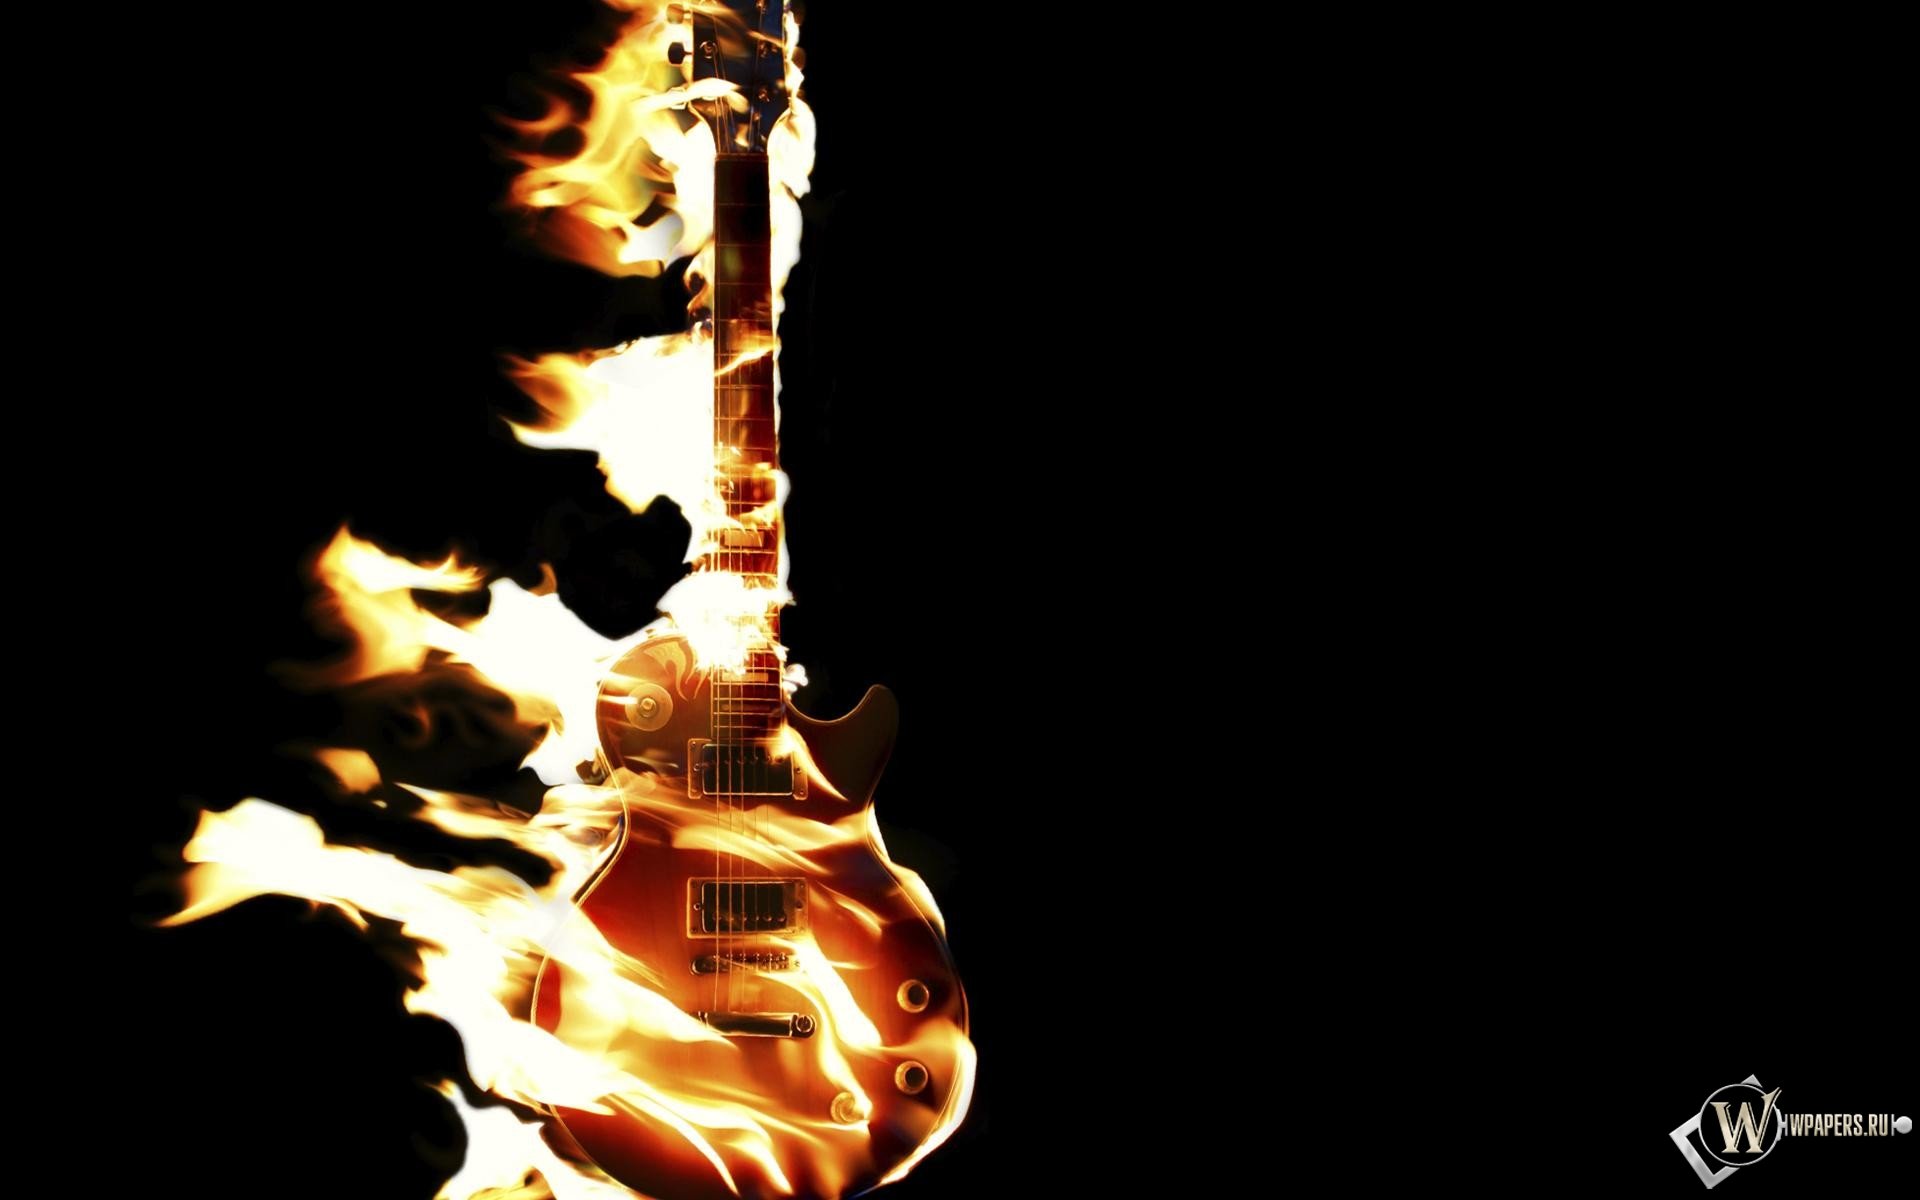 Flaming Les Paul Guitar - HD Wallpaper 